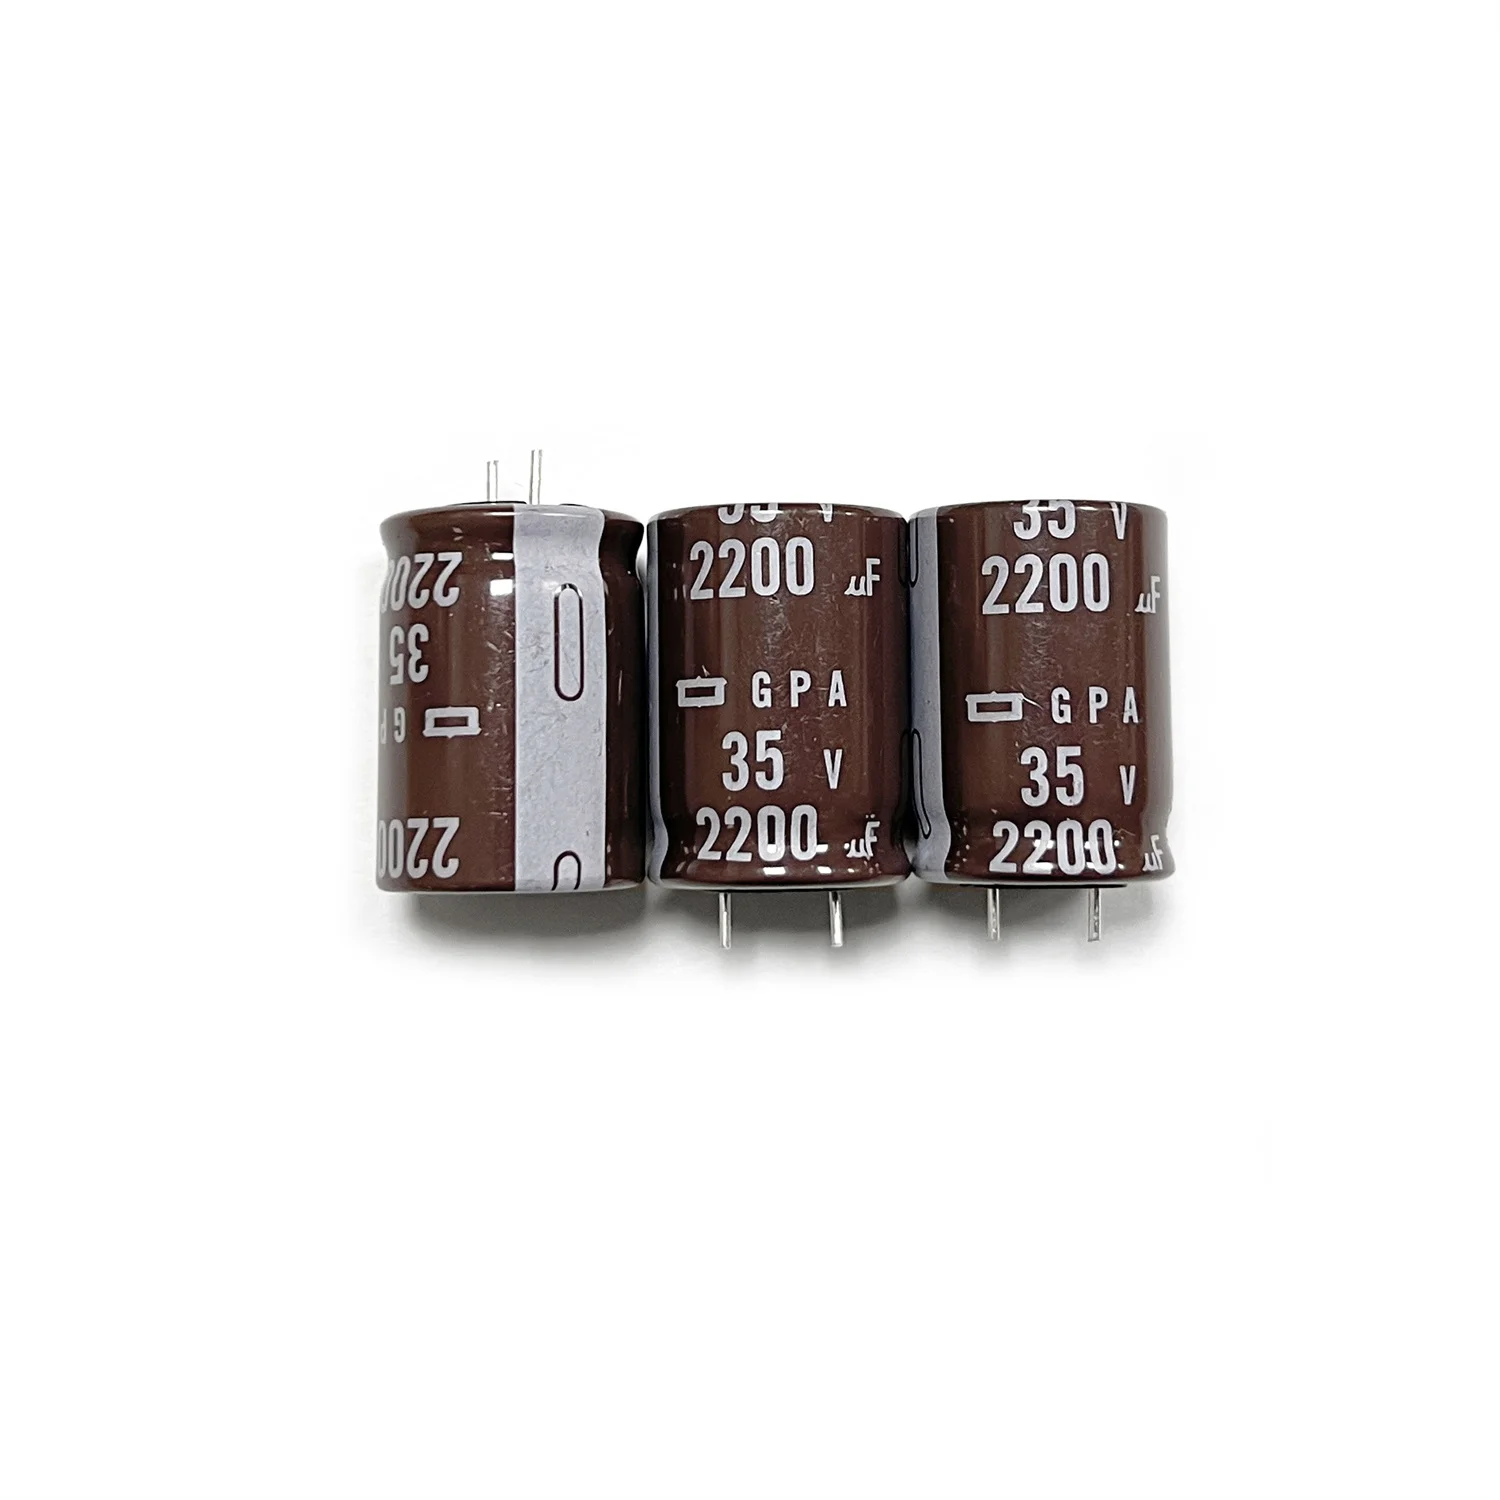 5шт 35V2200UF GPA 18x25 мм Оригинальные новые электролитические конденсаторы NIPPON CHEMI-CON NCC с длительным сроком службы